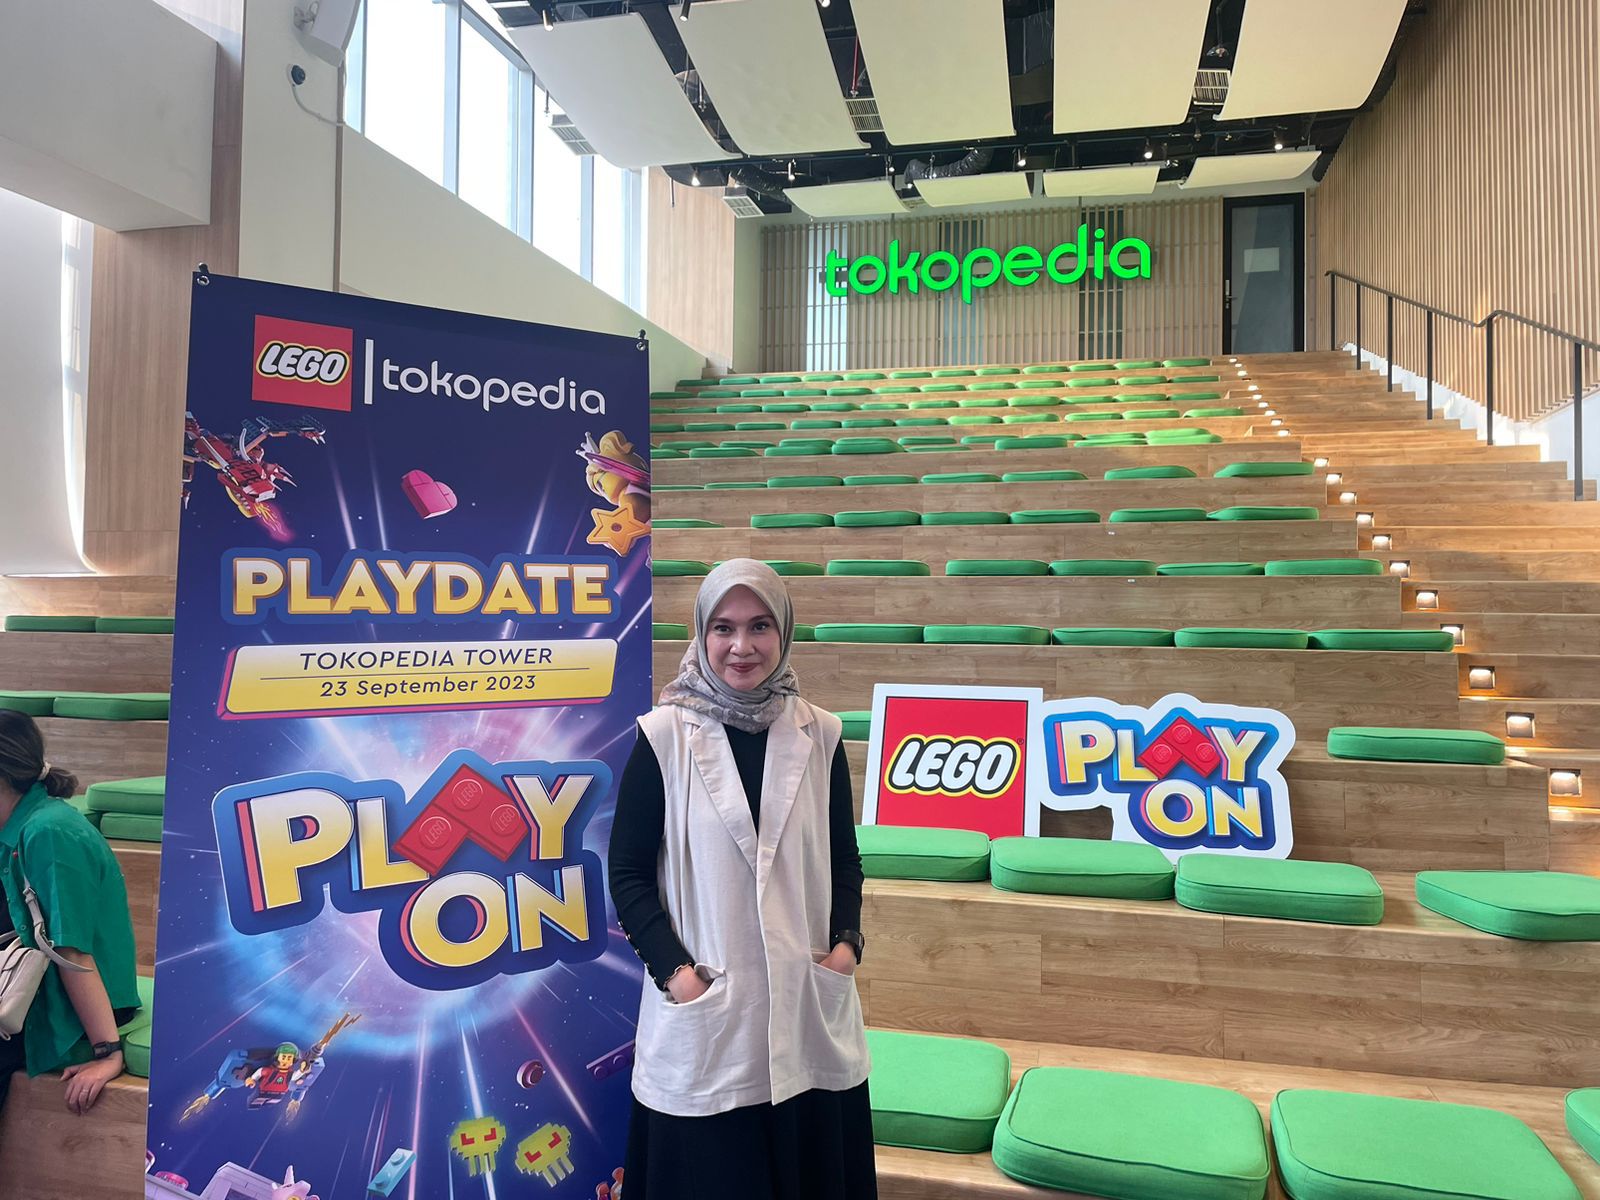 LEGO X Tokopedia Playdate Adakan Kelas Parenting & Playdate, Mengenal dan Mengembangkan Kegemaran si